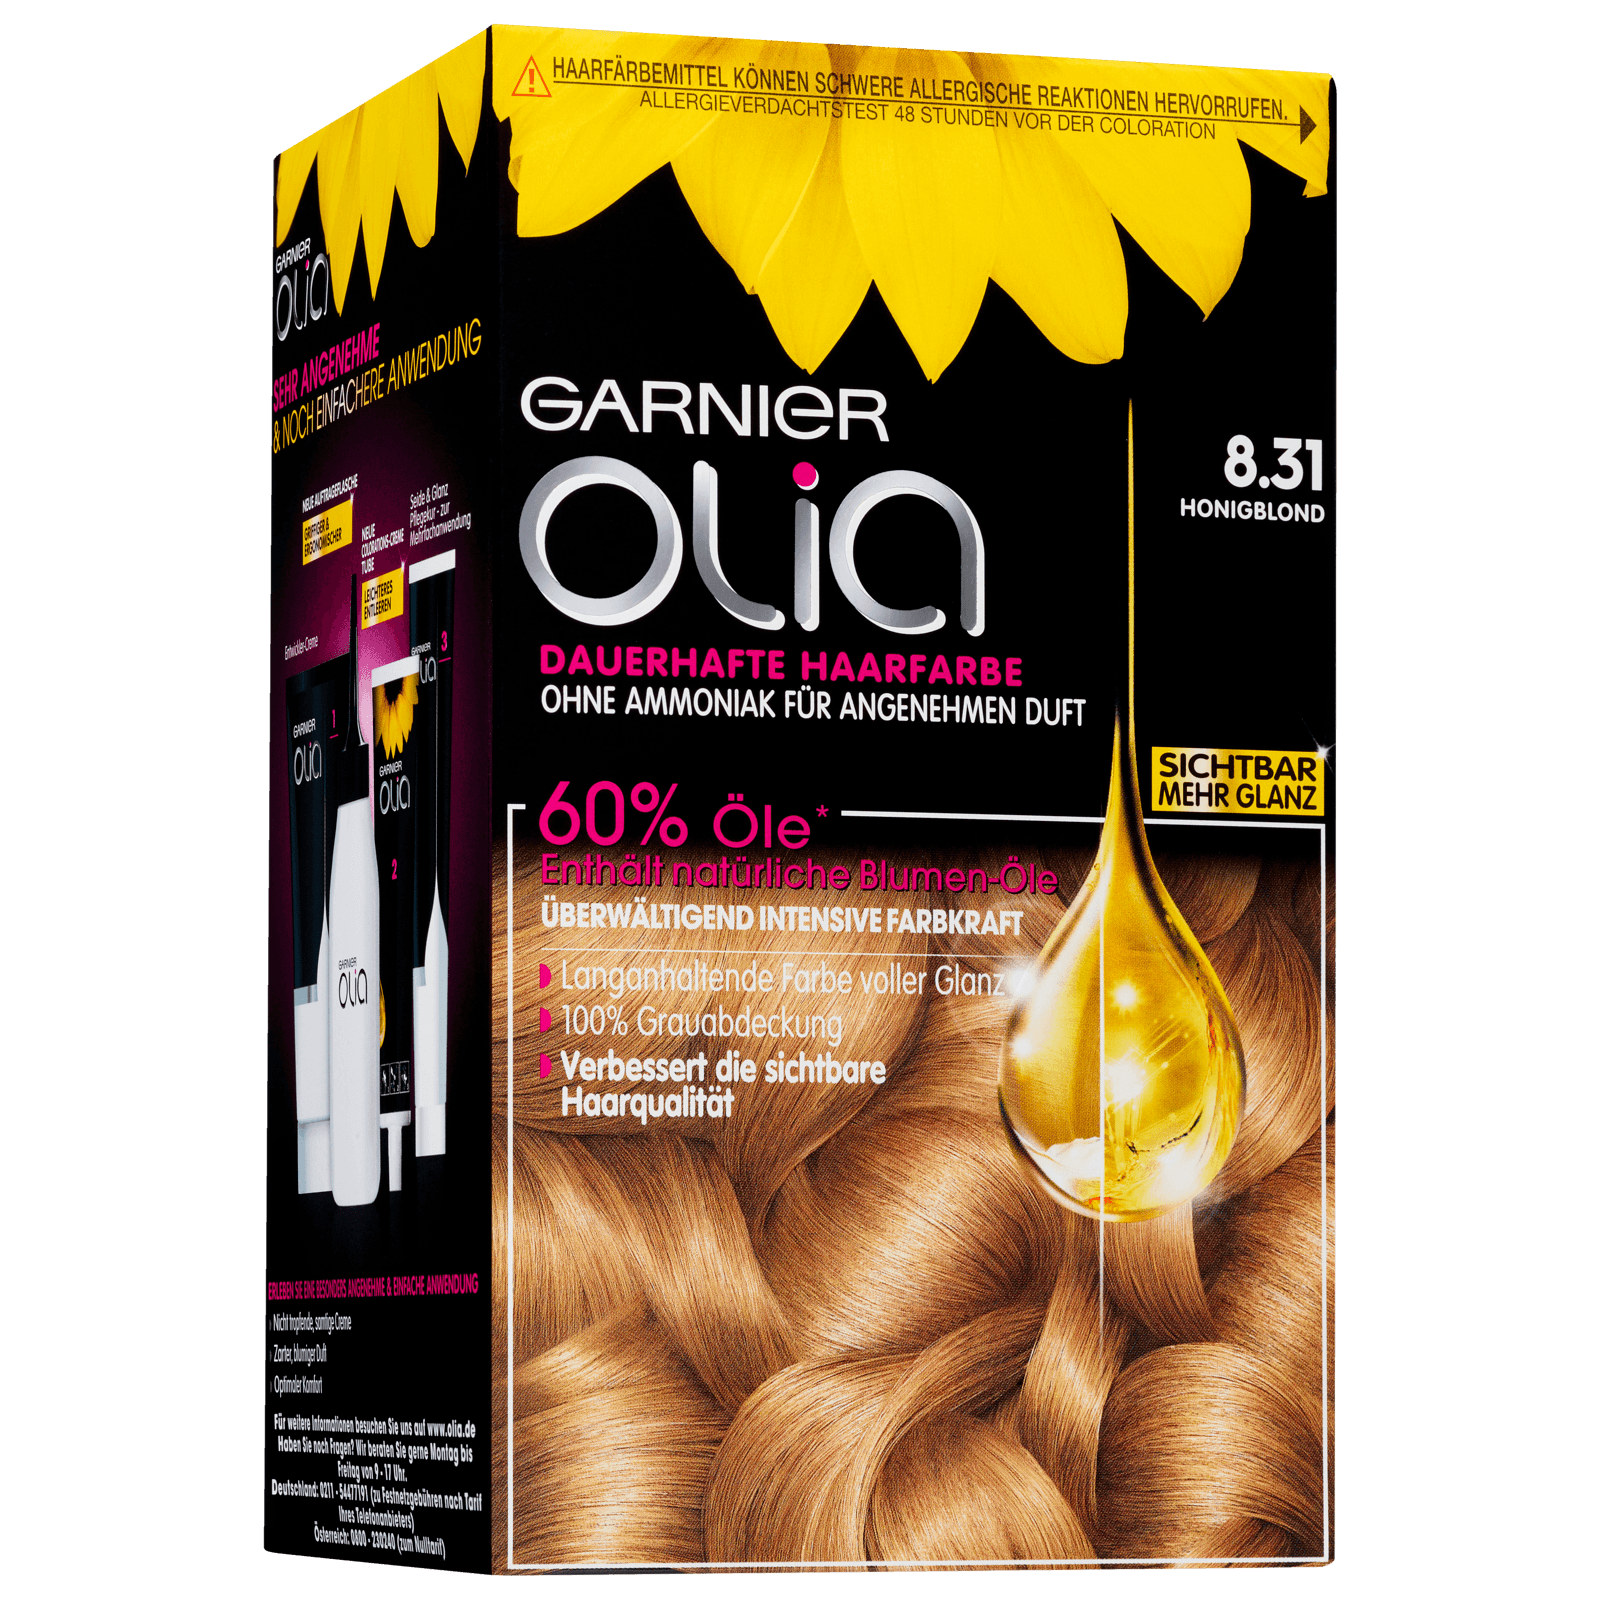 Garnier Olia Dauerhafte Haarfarbe 8.31 honigblond bei REWE online bestellen!